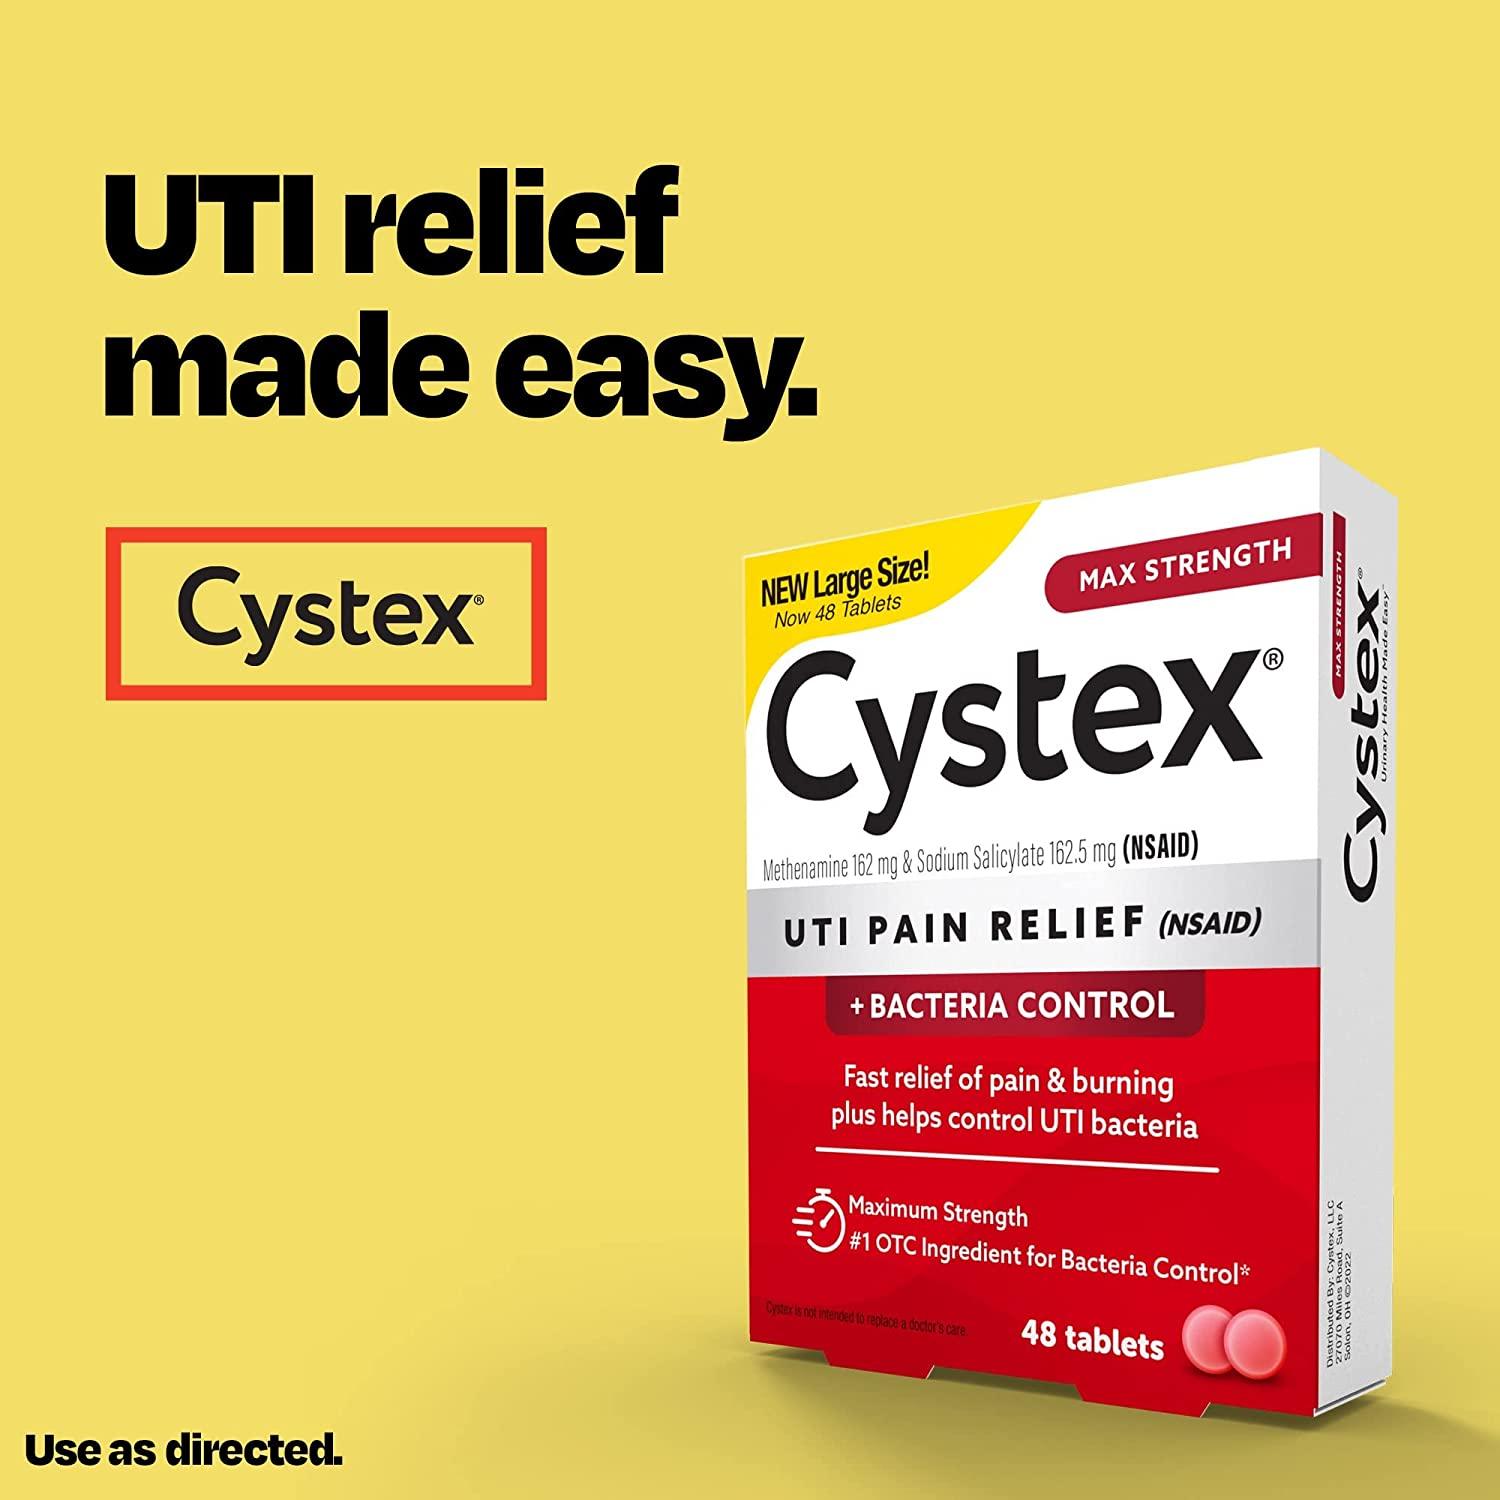 Cystex Soulagement de la Douleur d'Infection Urinaire UTI - mondialpharma.com